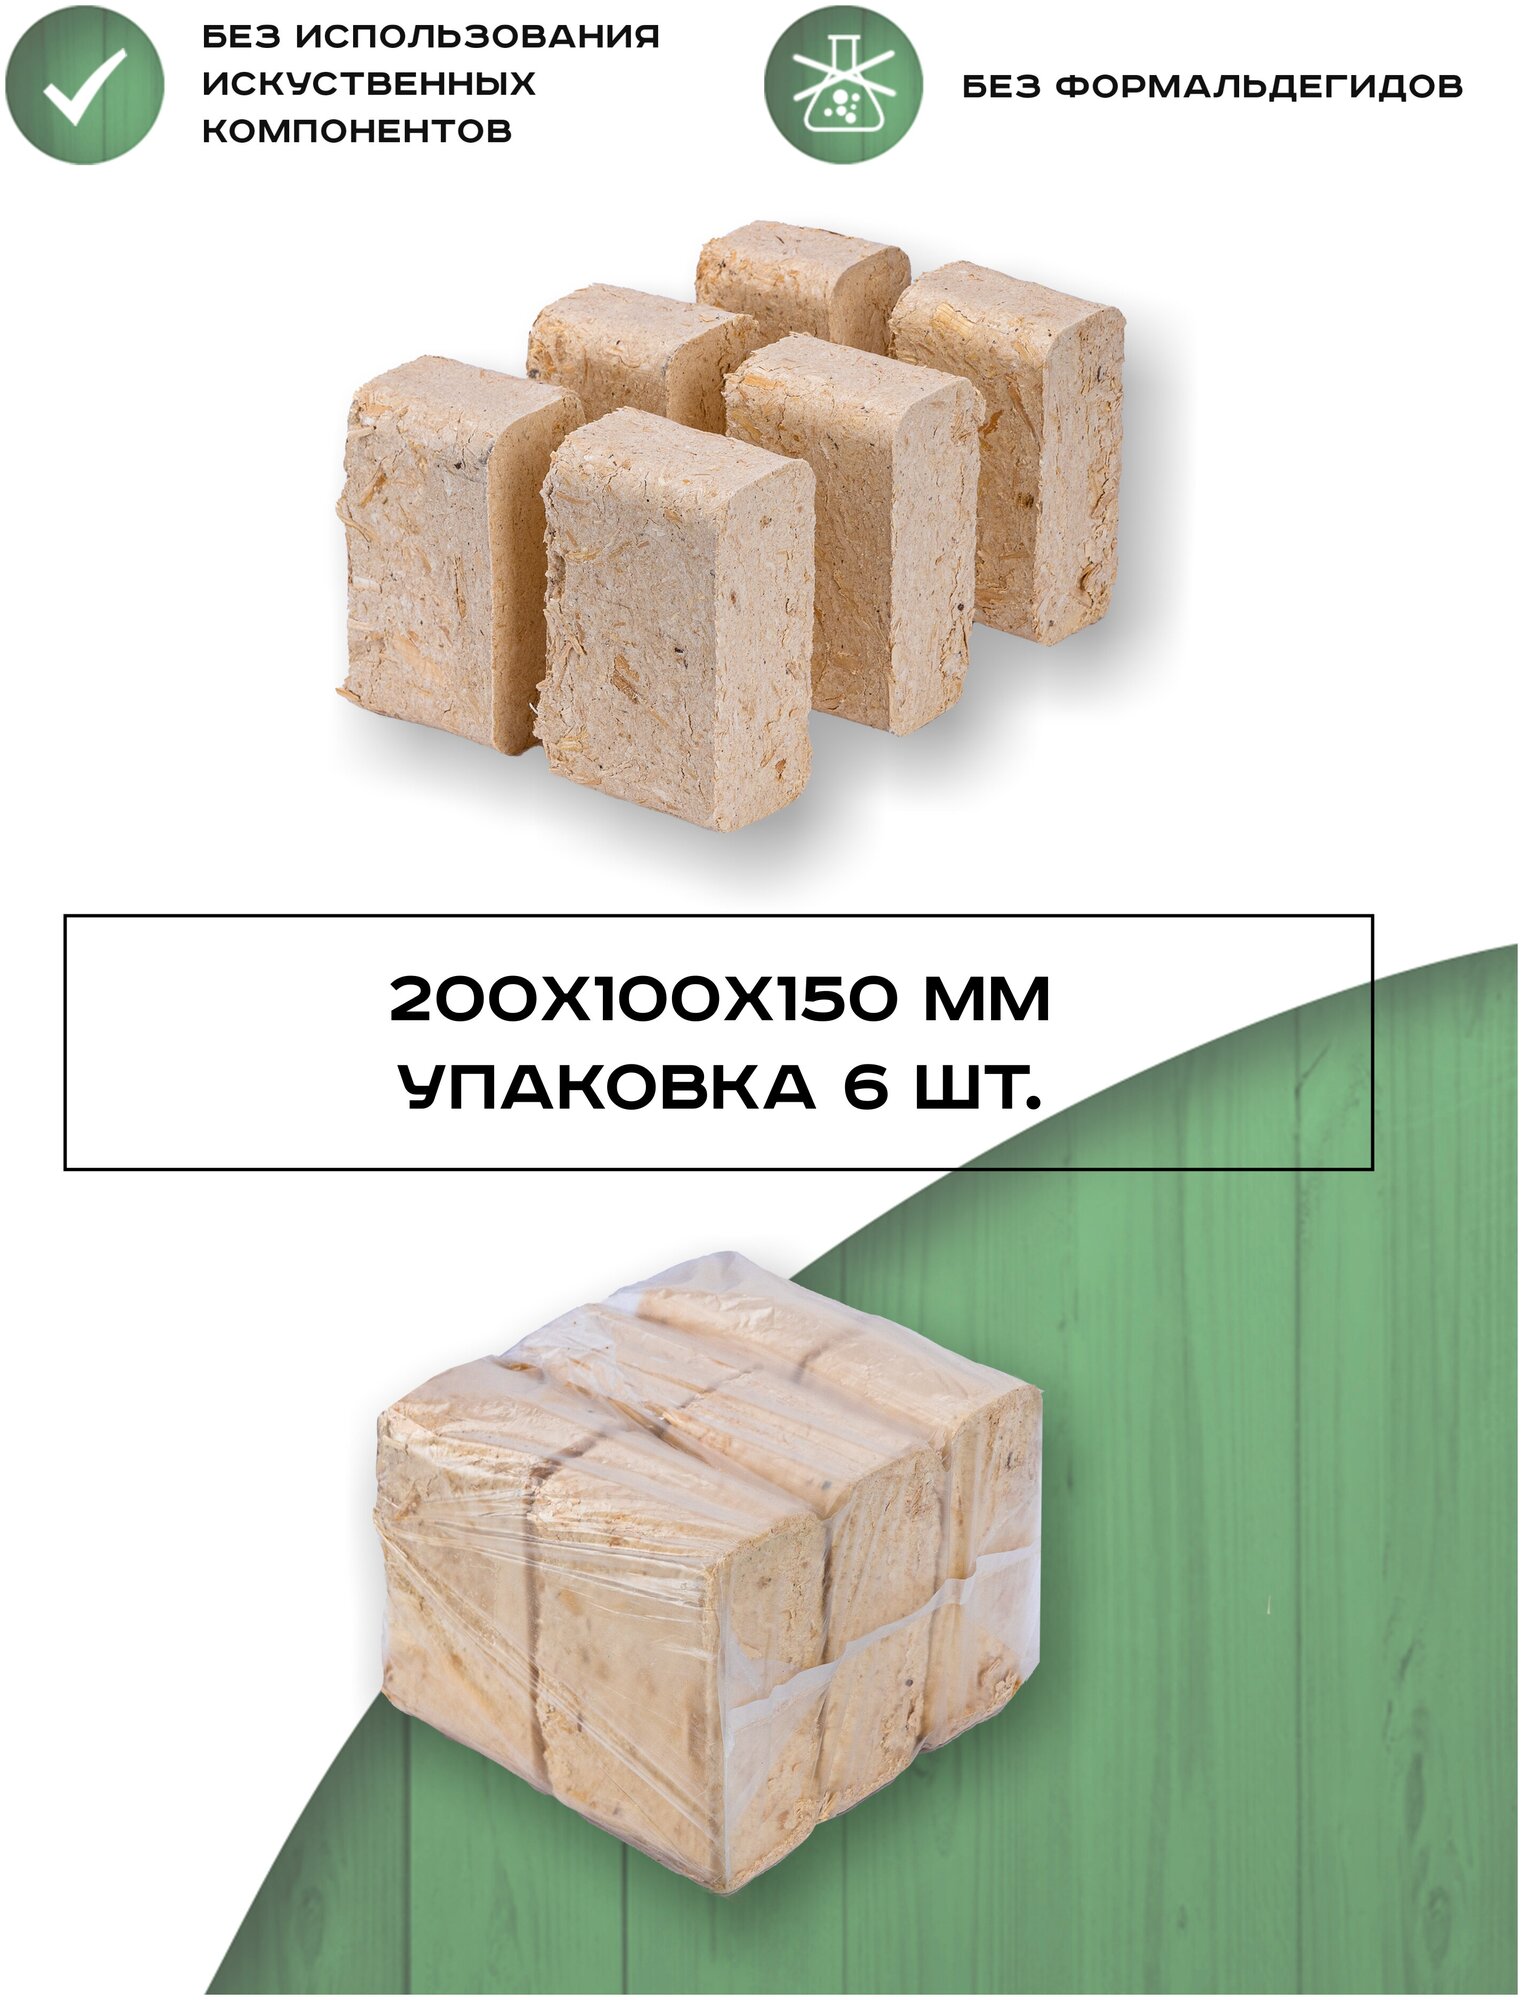 Мини упаковка Евродров / Топливные брикеты из сосны RUF люкс мини 6 ШТ / Сухие опилки дрова для длительного горения